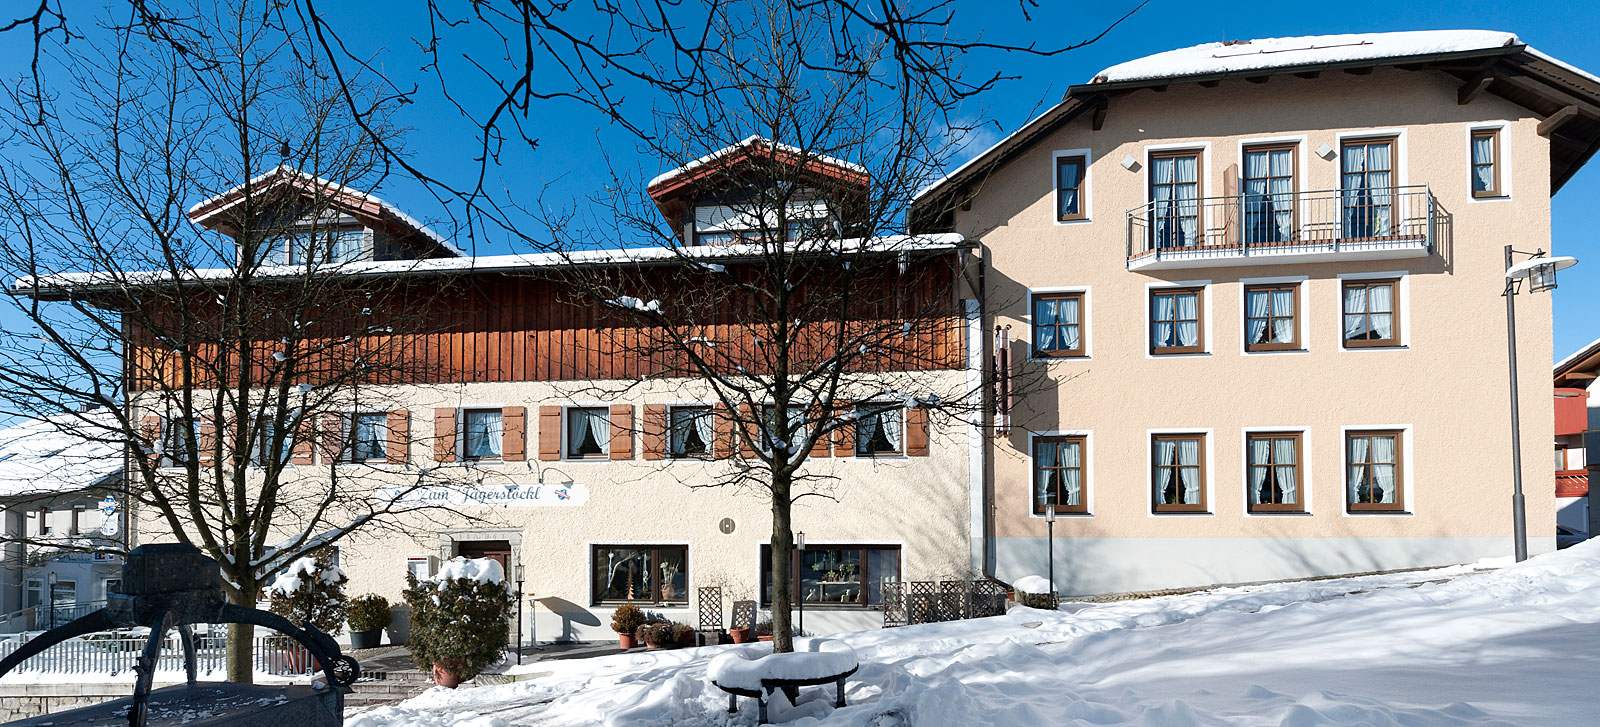 Urlaubsangebote für jede Jahreszeit im Hotel Bayerischer Wald